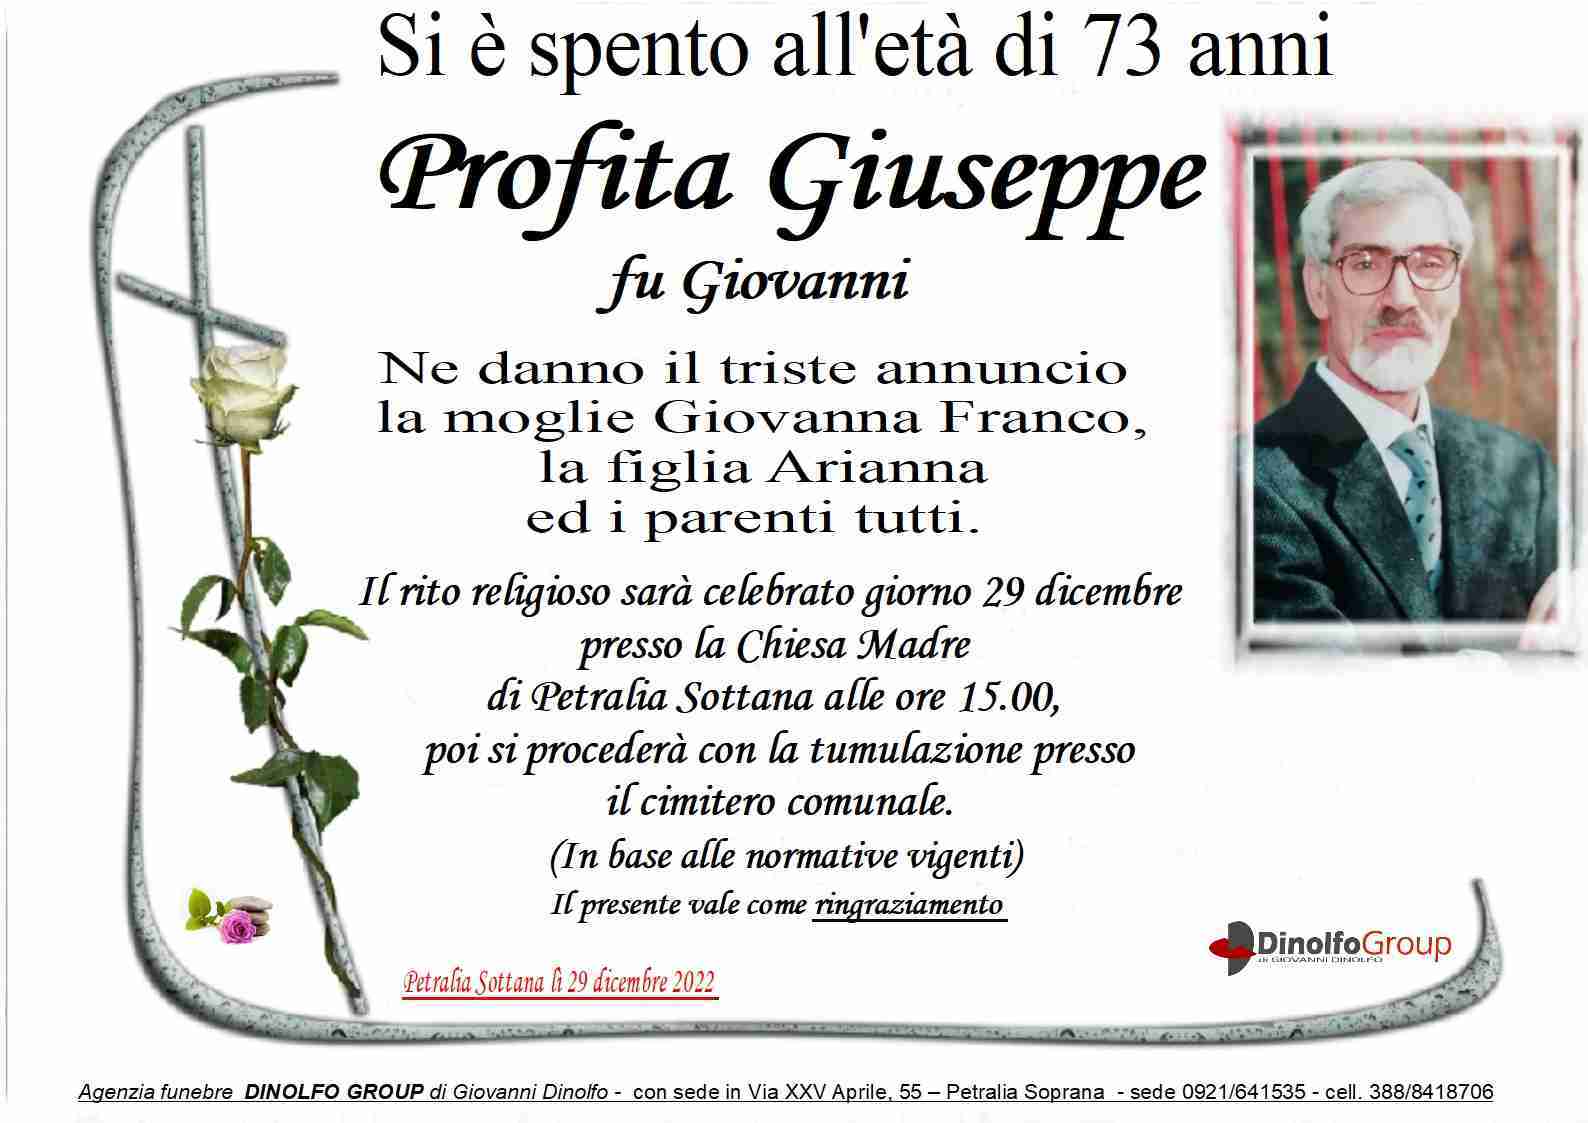 Giuseppe Profita